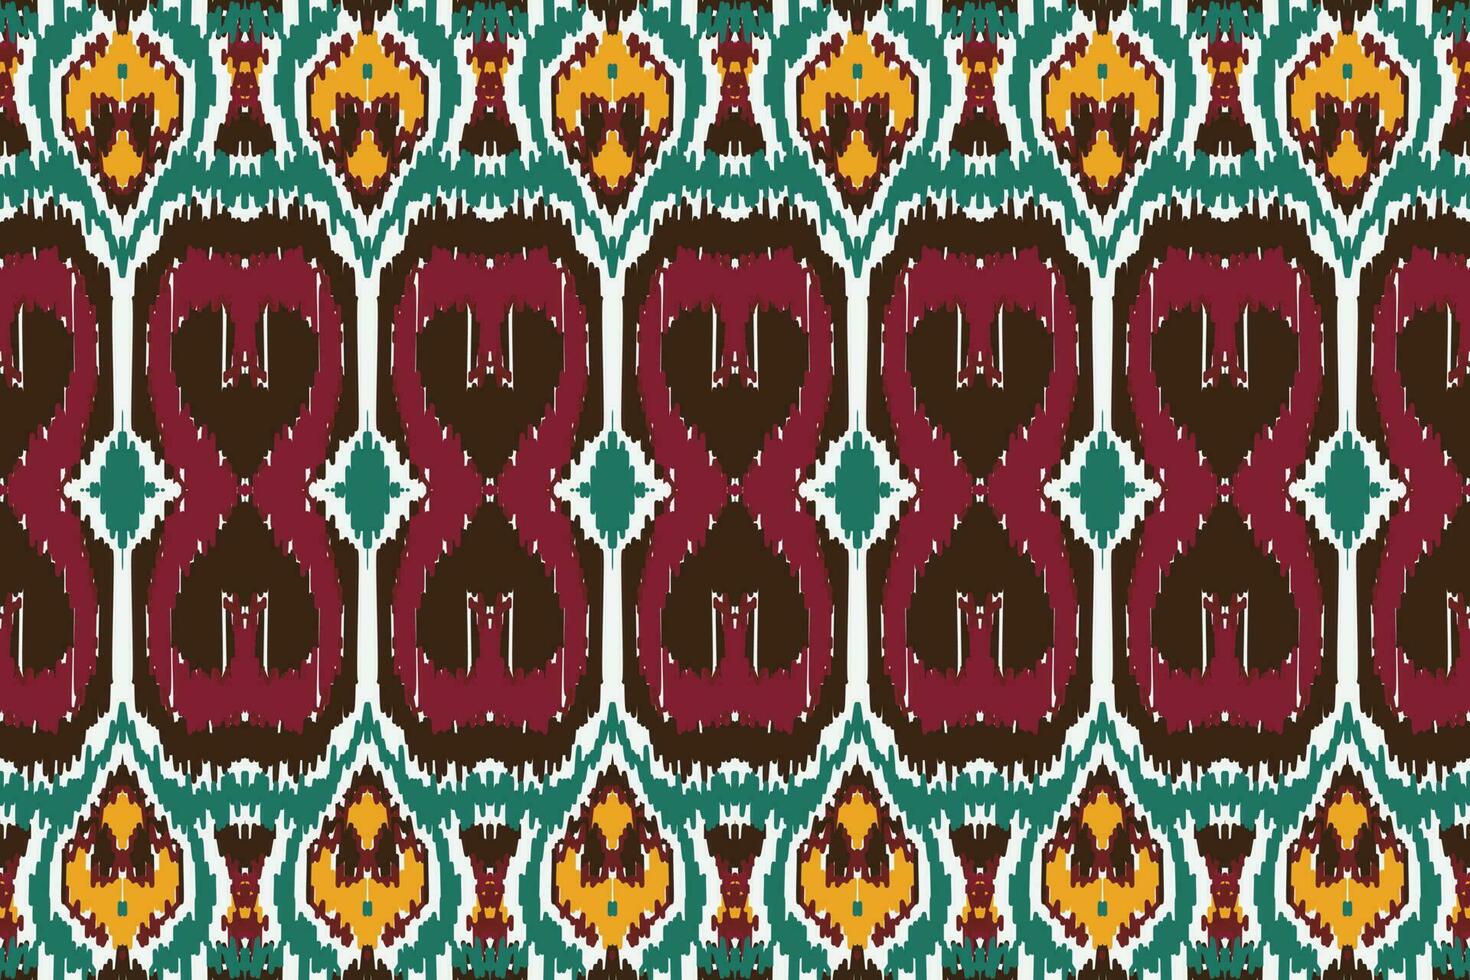 motiv ikat sömlös mönster broderi bakgrund. geometrisk etnisk orientalisk mönster traditionell. ikat aztec stil abstrakt vektor illustration. design för skriva ut textur, tyg, saree, sari, matta.